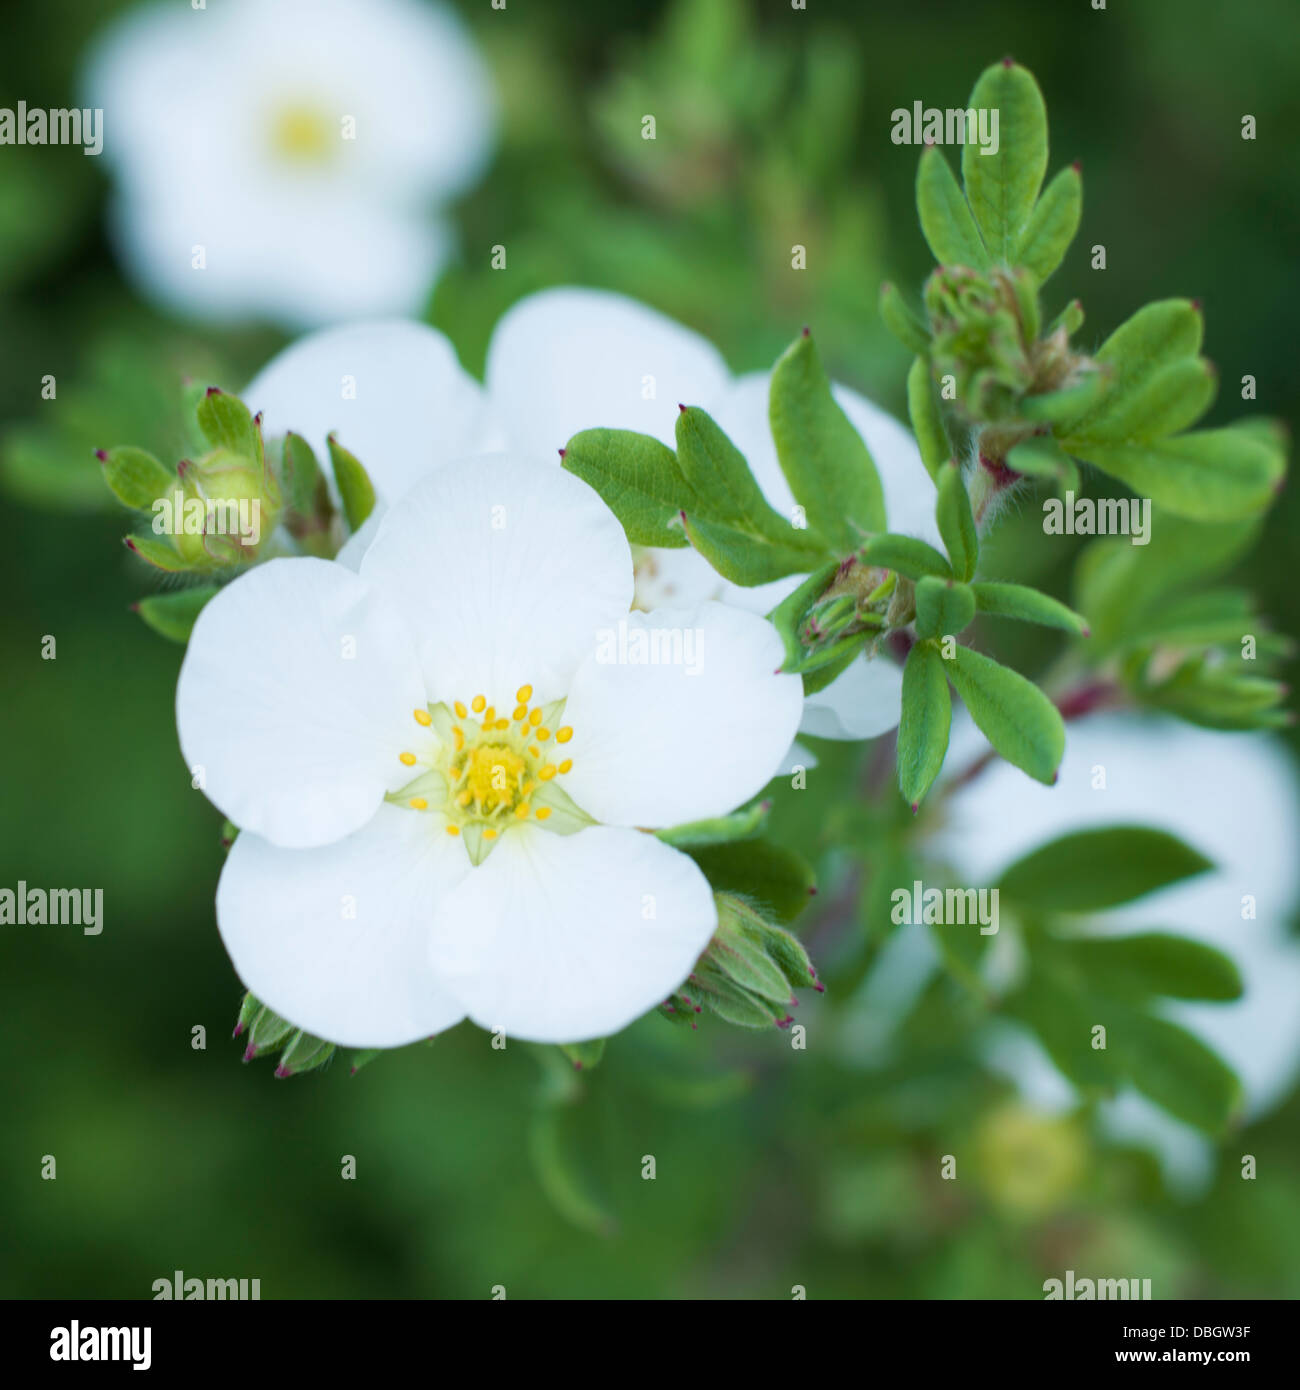 flower, white flower on green background Stock Photo